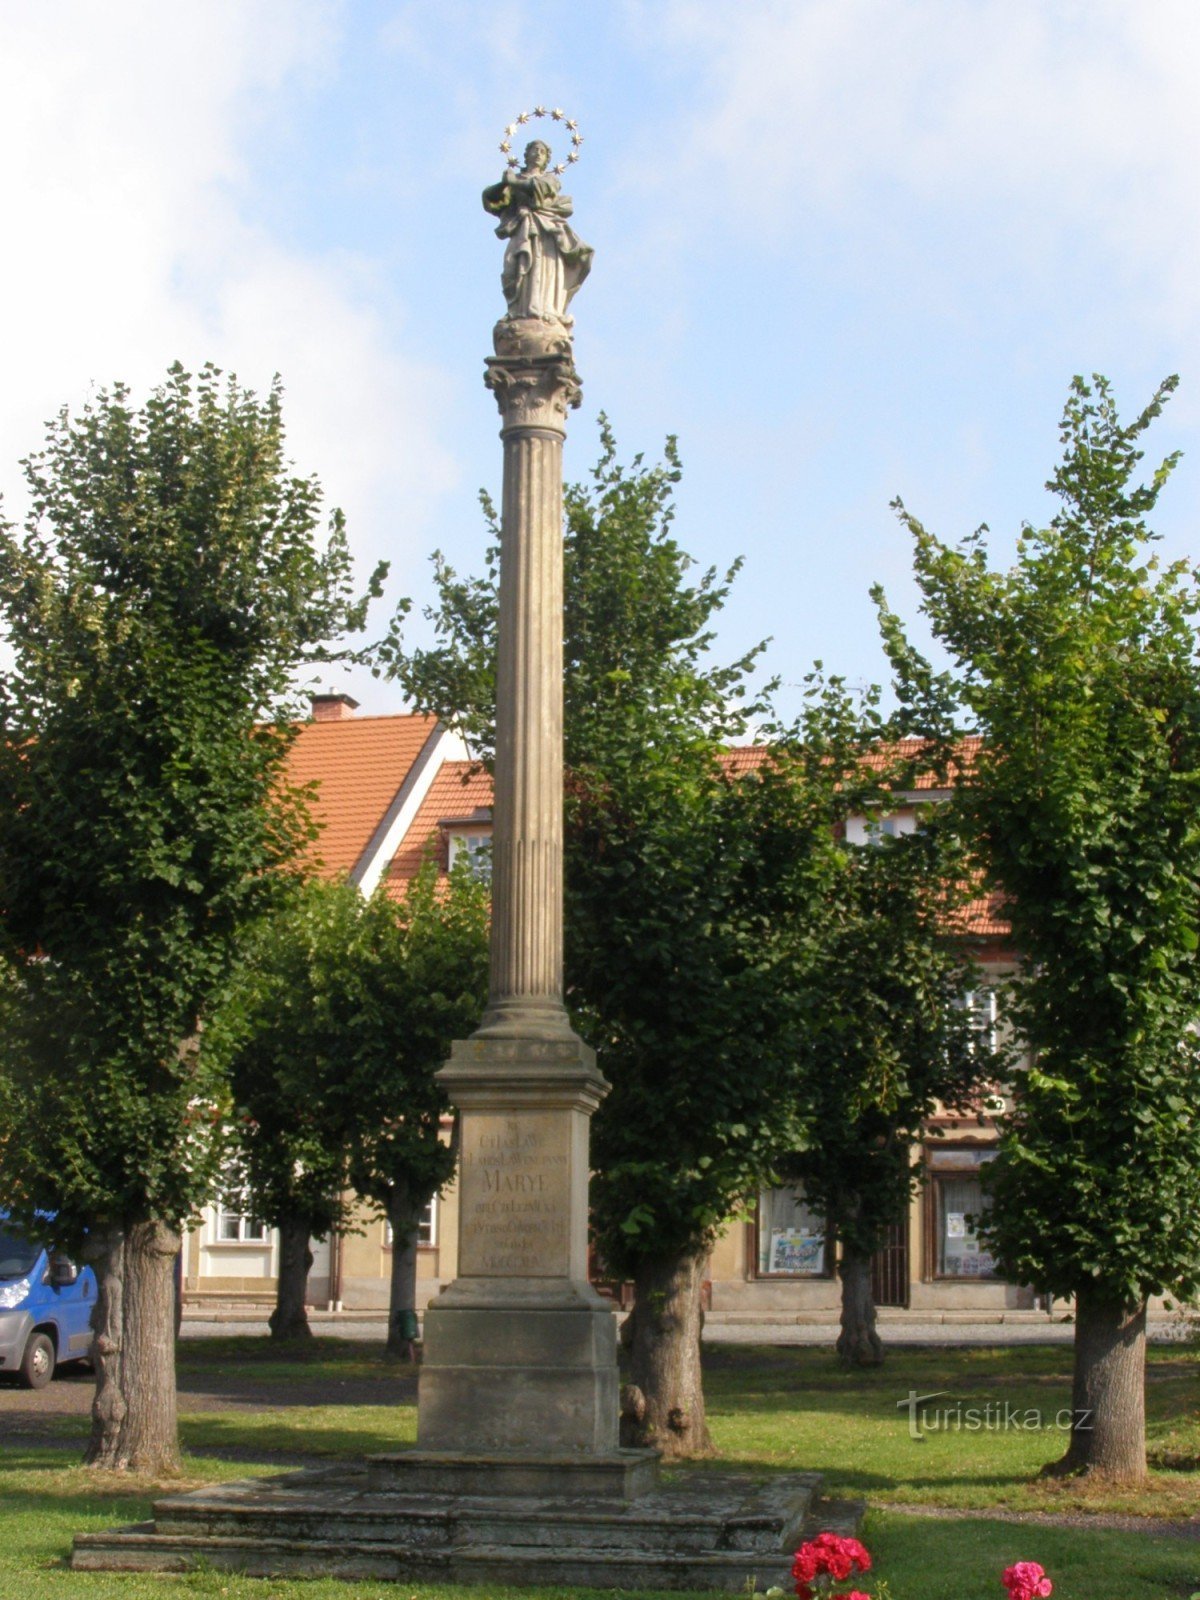 Eisenbahn - náměstí Svobody, eine Reihe von Denkmälern